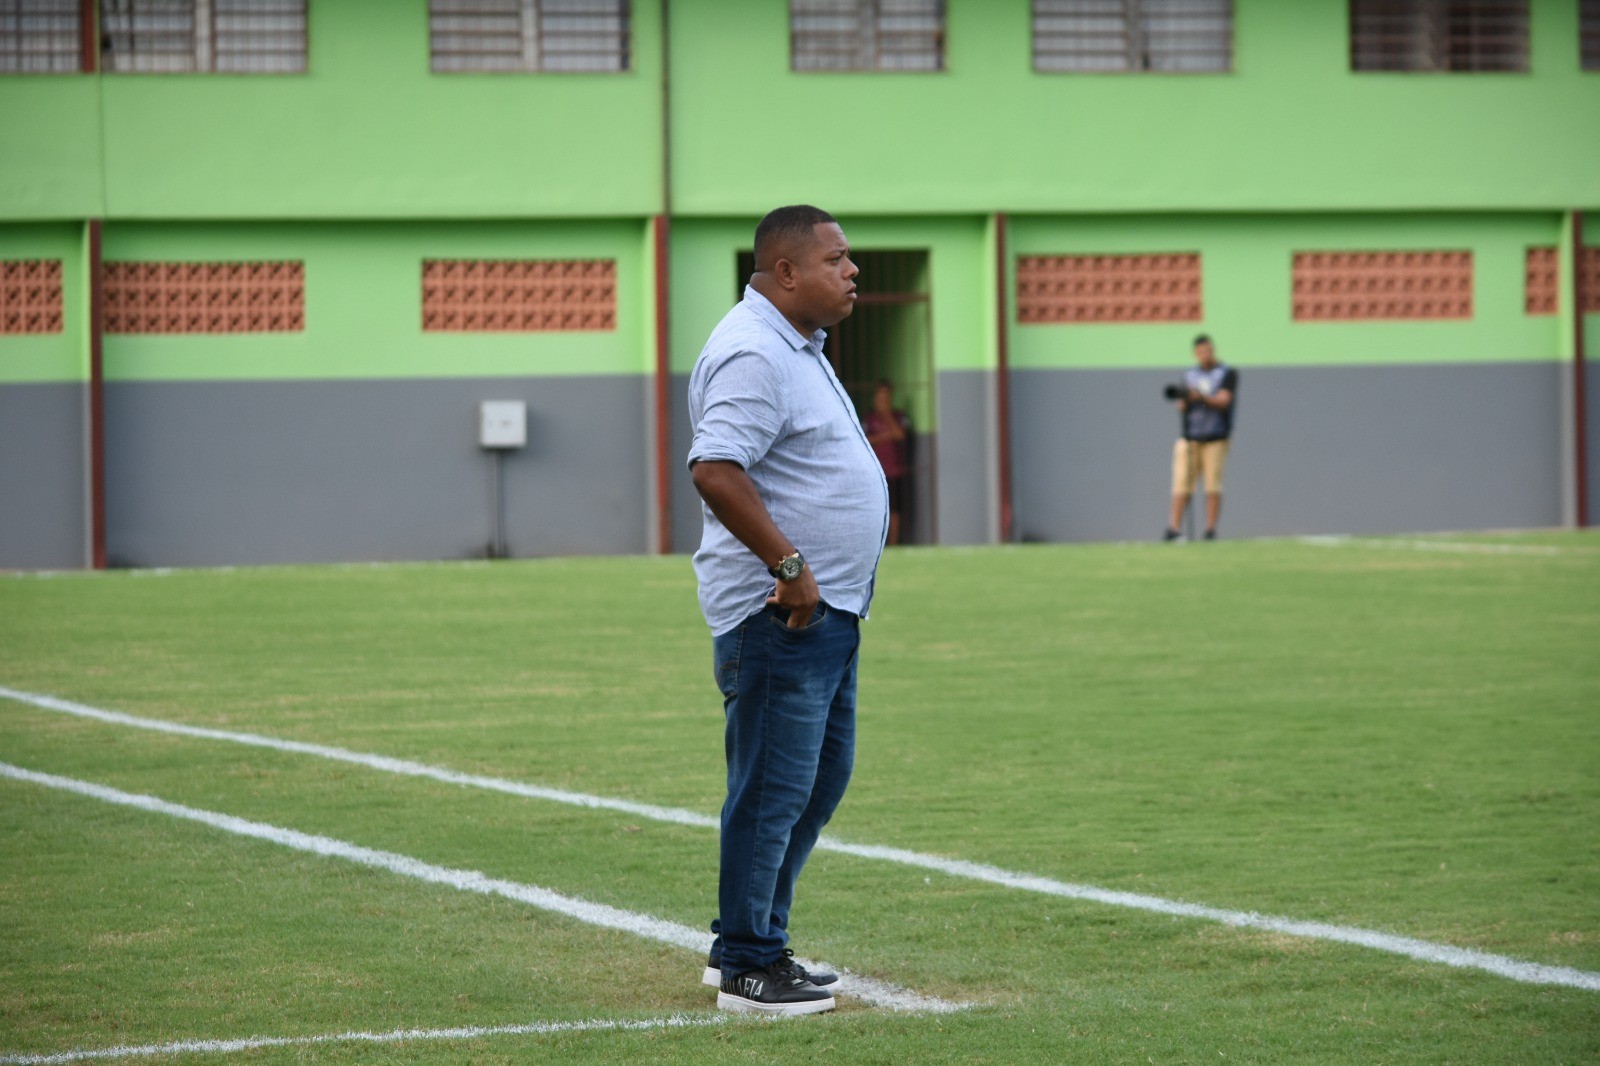 Após FPF manter jogo em pasto, diretoria do Flu cogita não participar da  Copinha em 2024 - Fluminense: Últimas notícias, vídeos, onde assistir e  próximos jogos